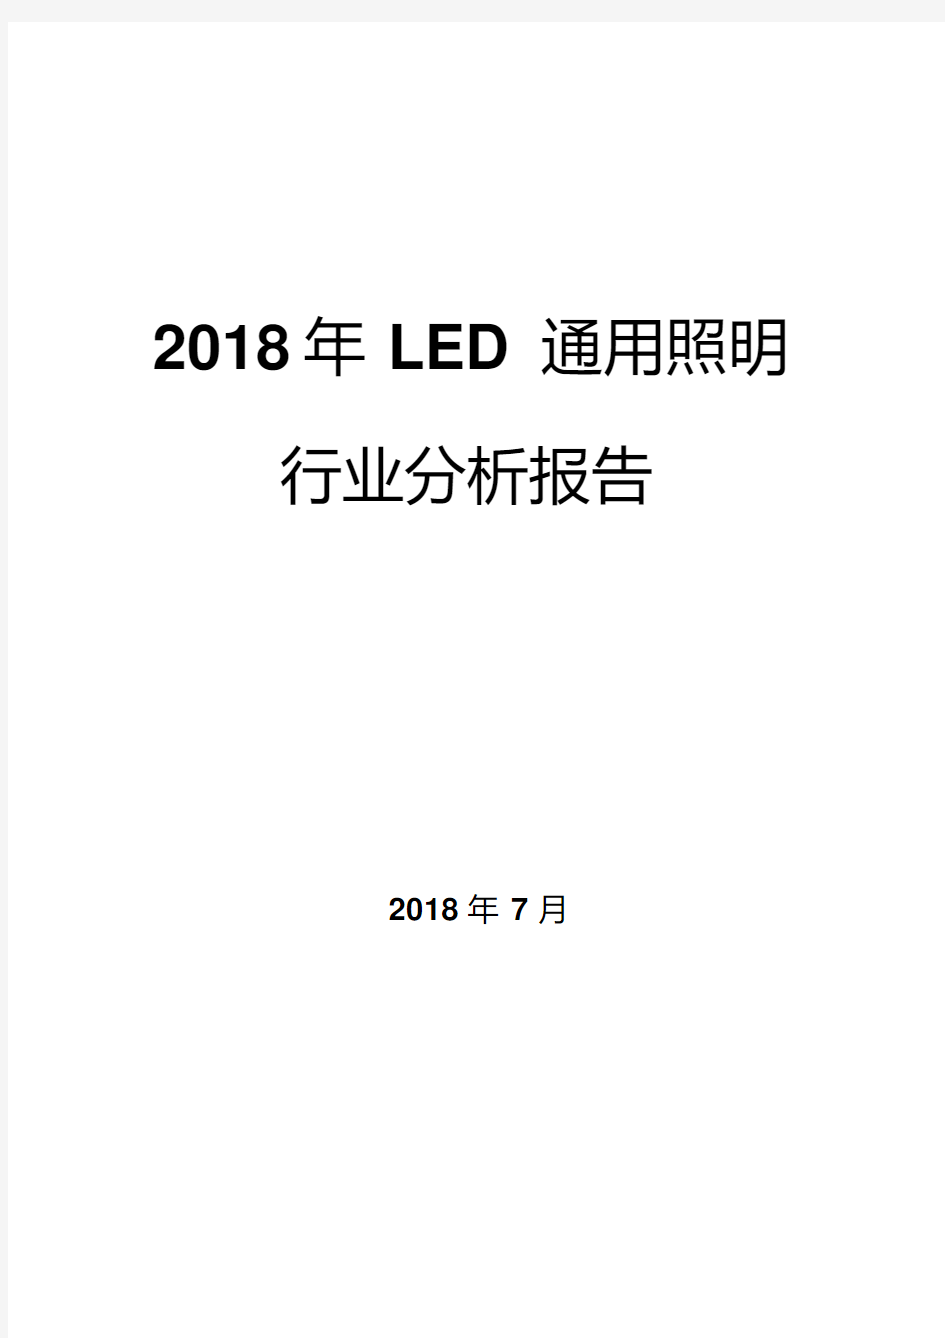 2018年LED通用照明行业分析报告